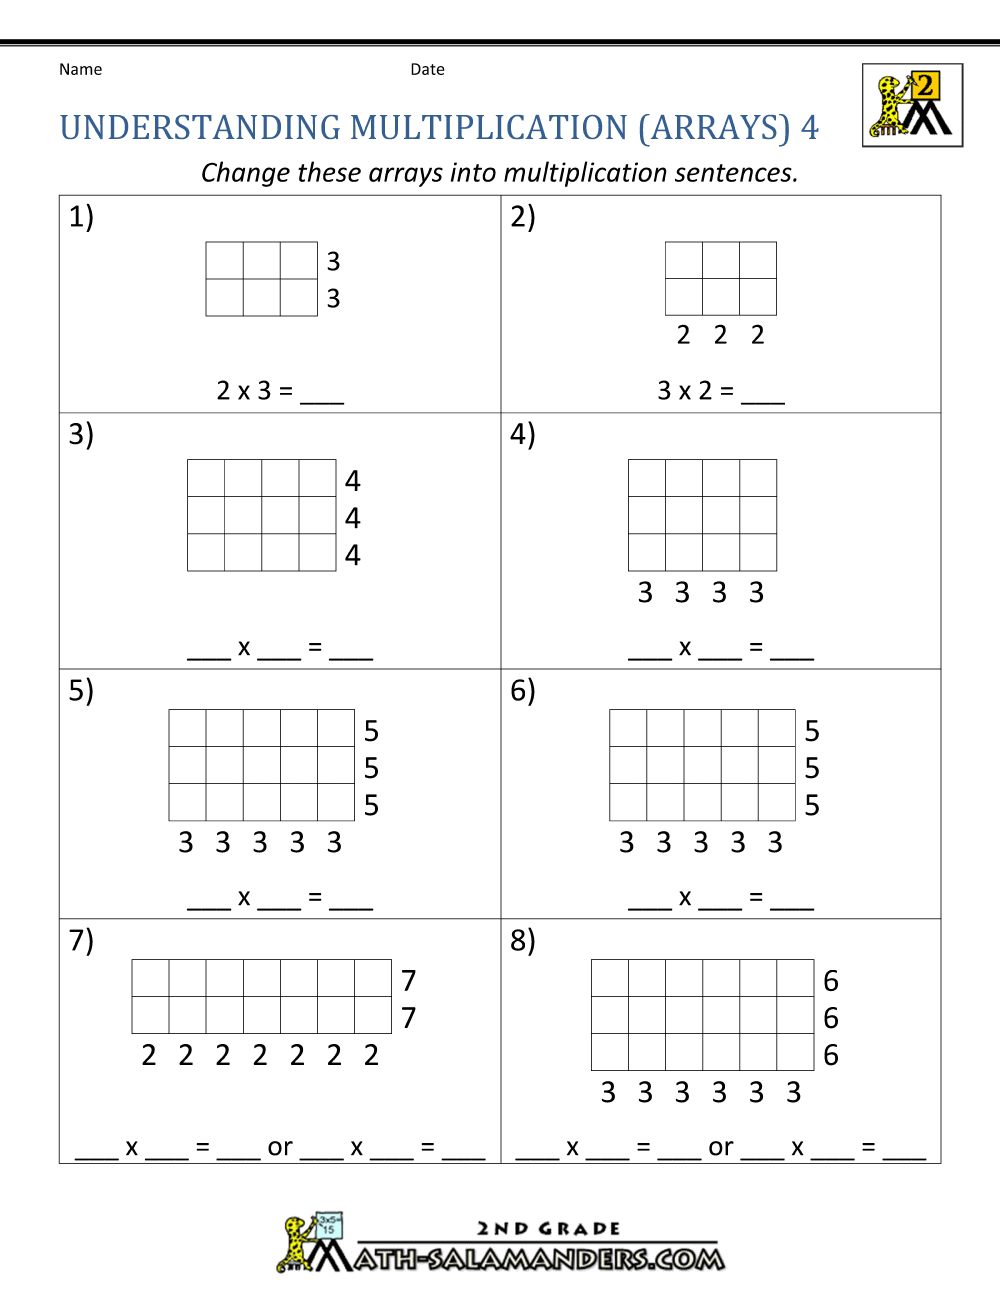 3rd-grade-multiplication-arrays-worksheets-pdf-thekidsworksheet